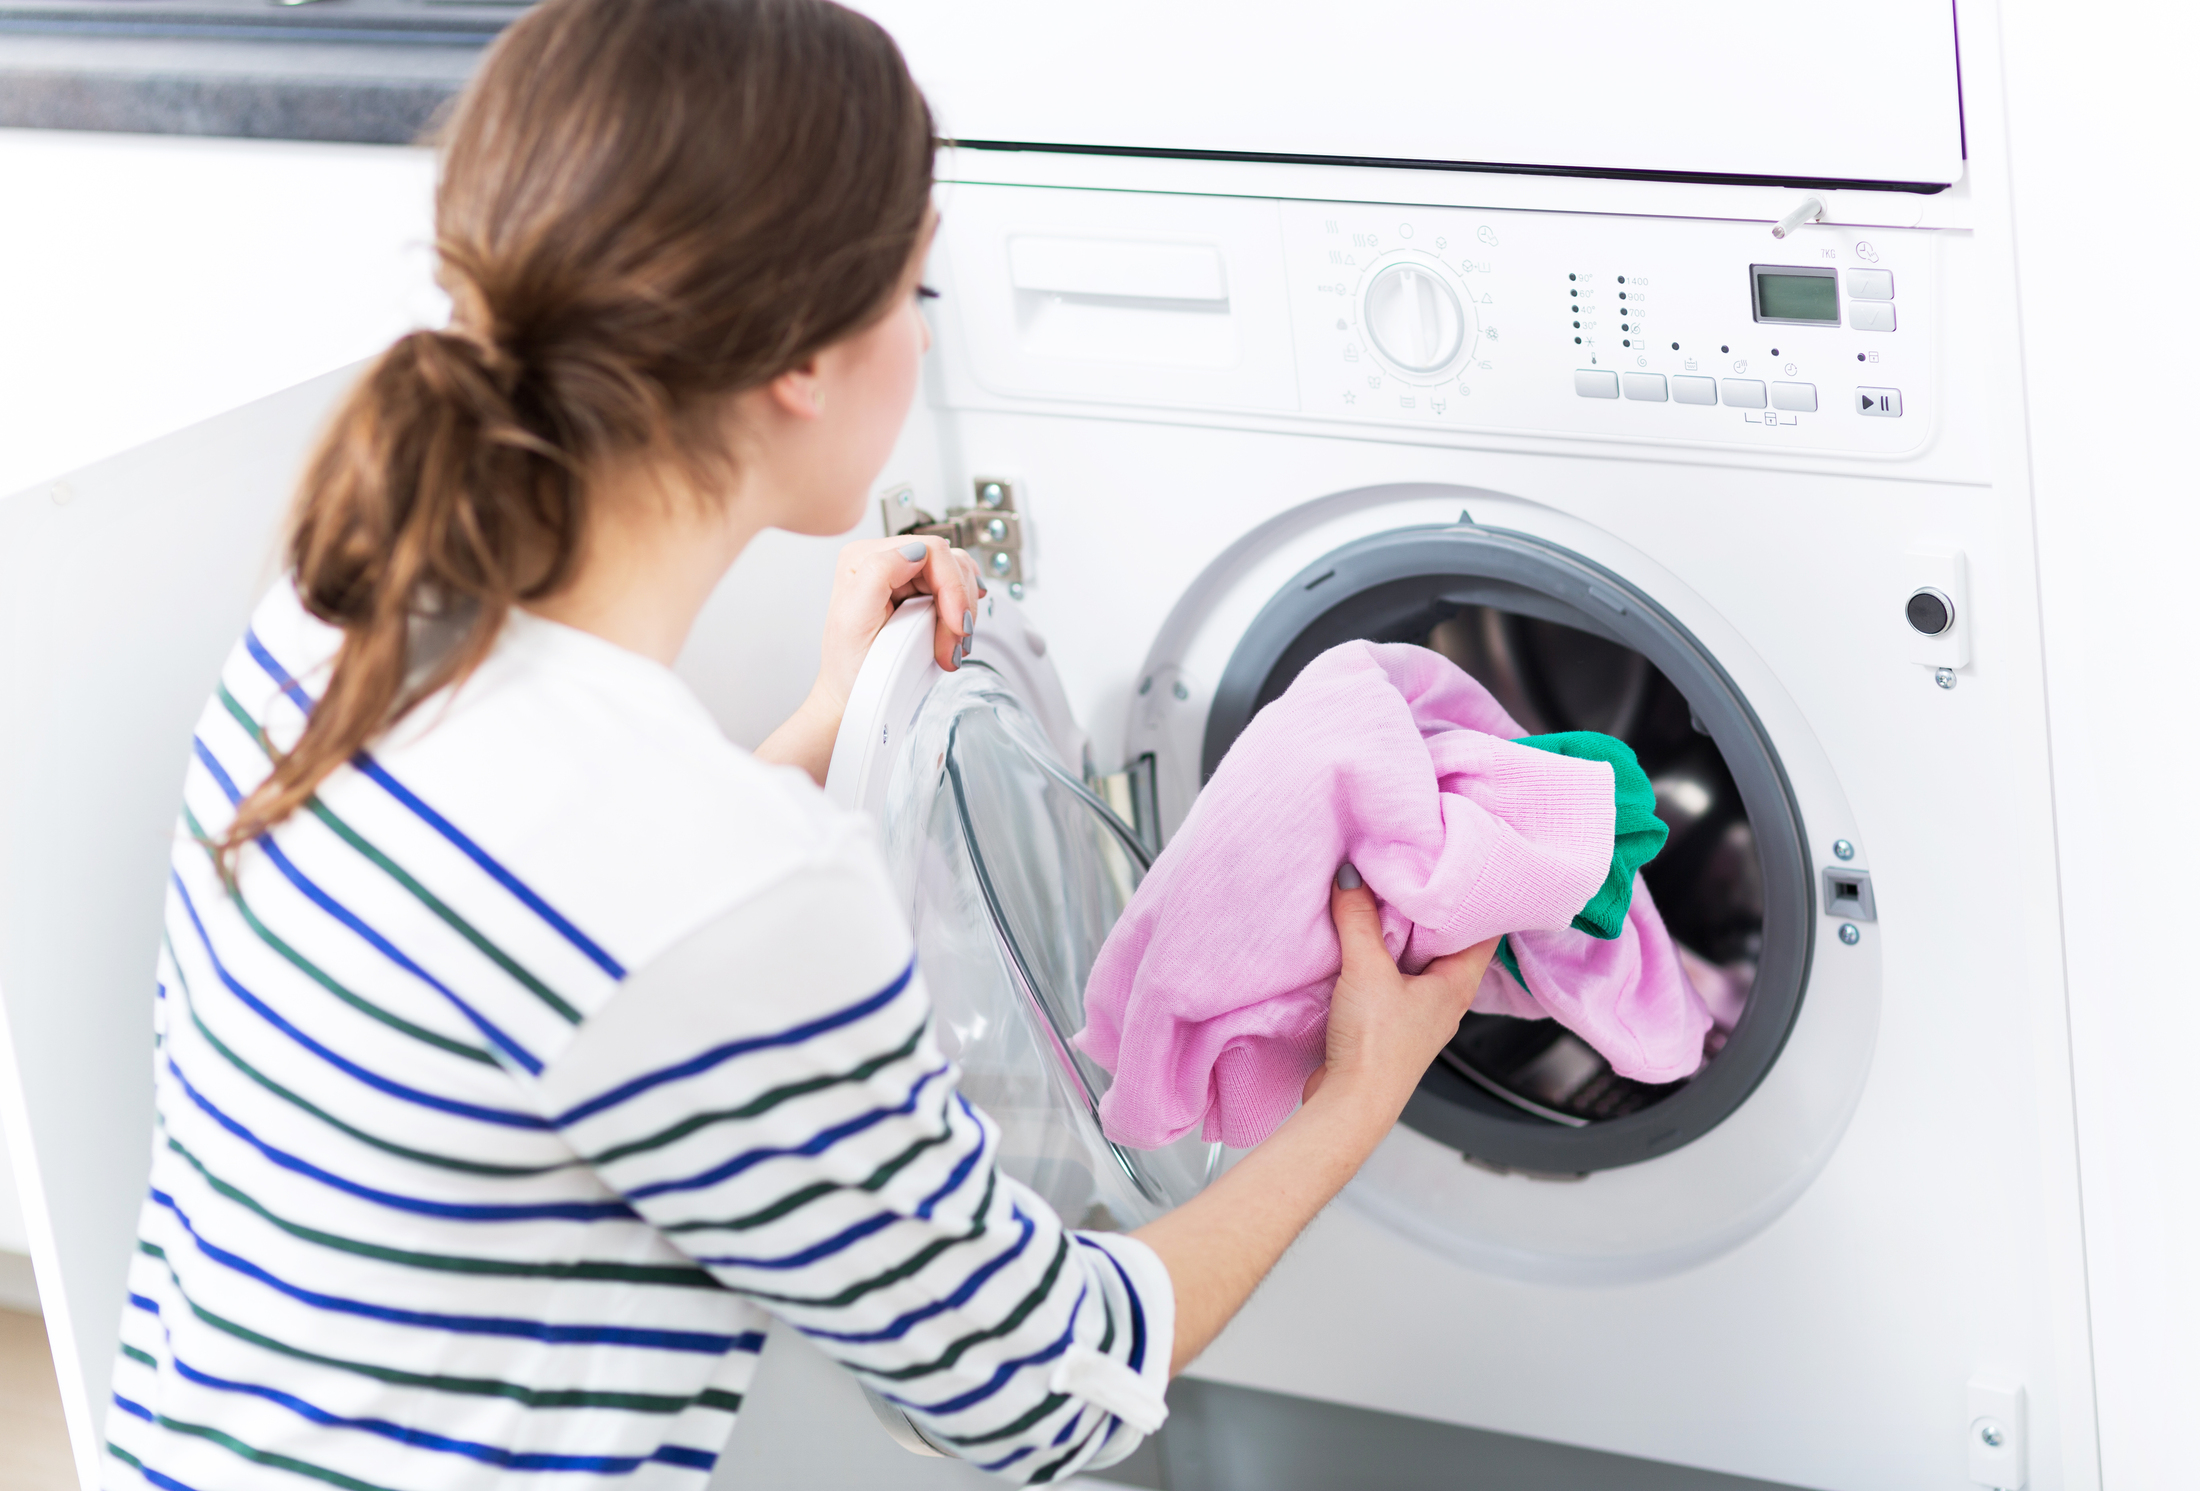 Ce qu'il faut faire avant de laver son linge en machine